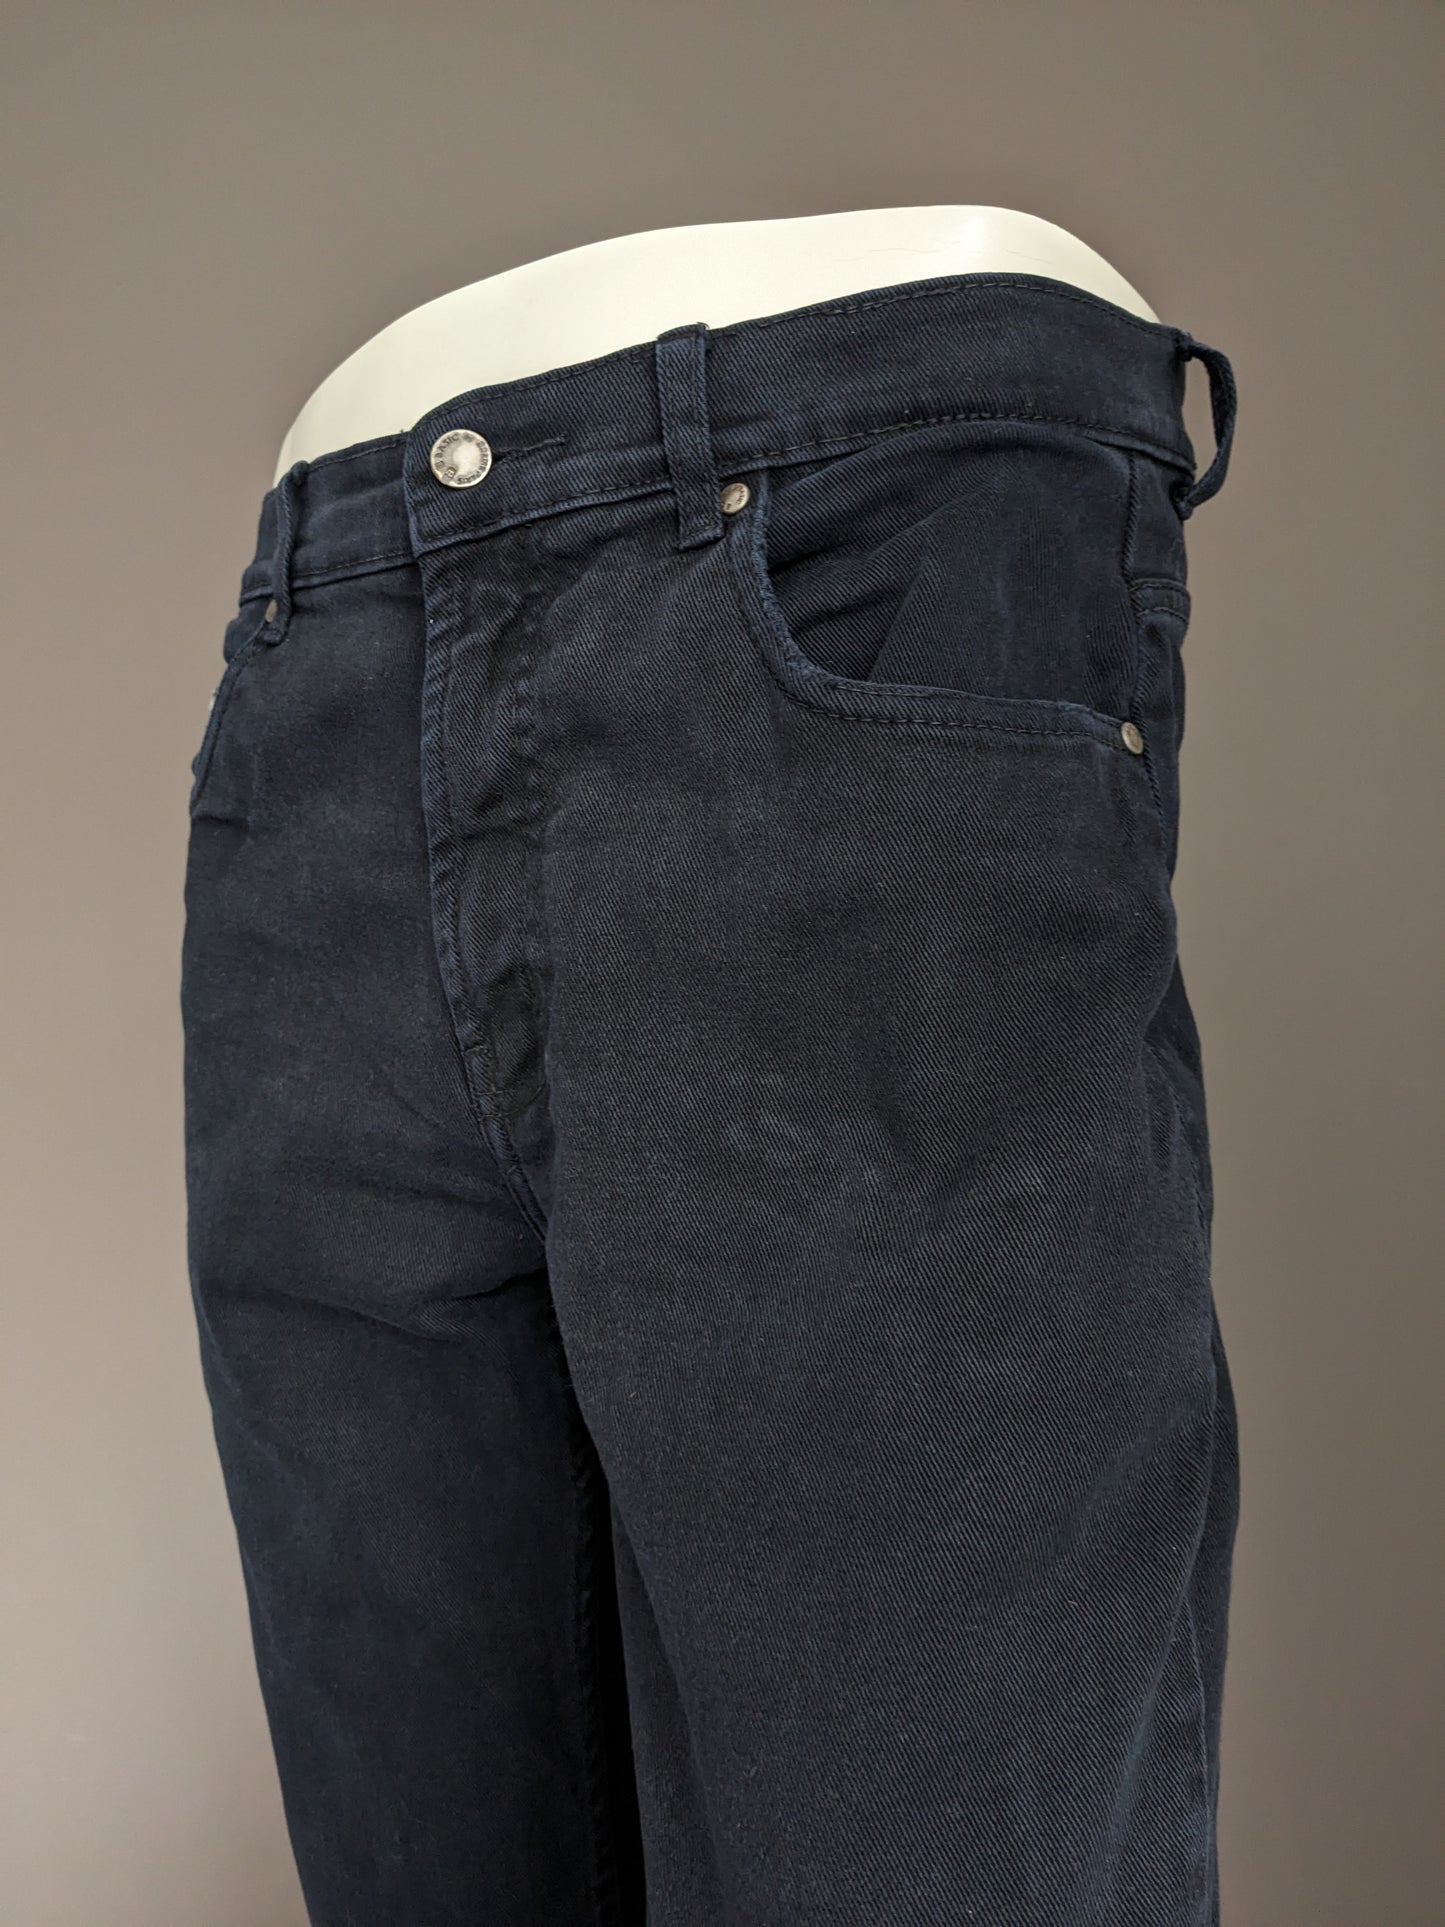 B BASIC di Brams Paris Jeans. Colorato nero. Taglia W34 - L34. Fit di comfort. stirata.